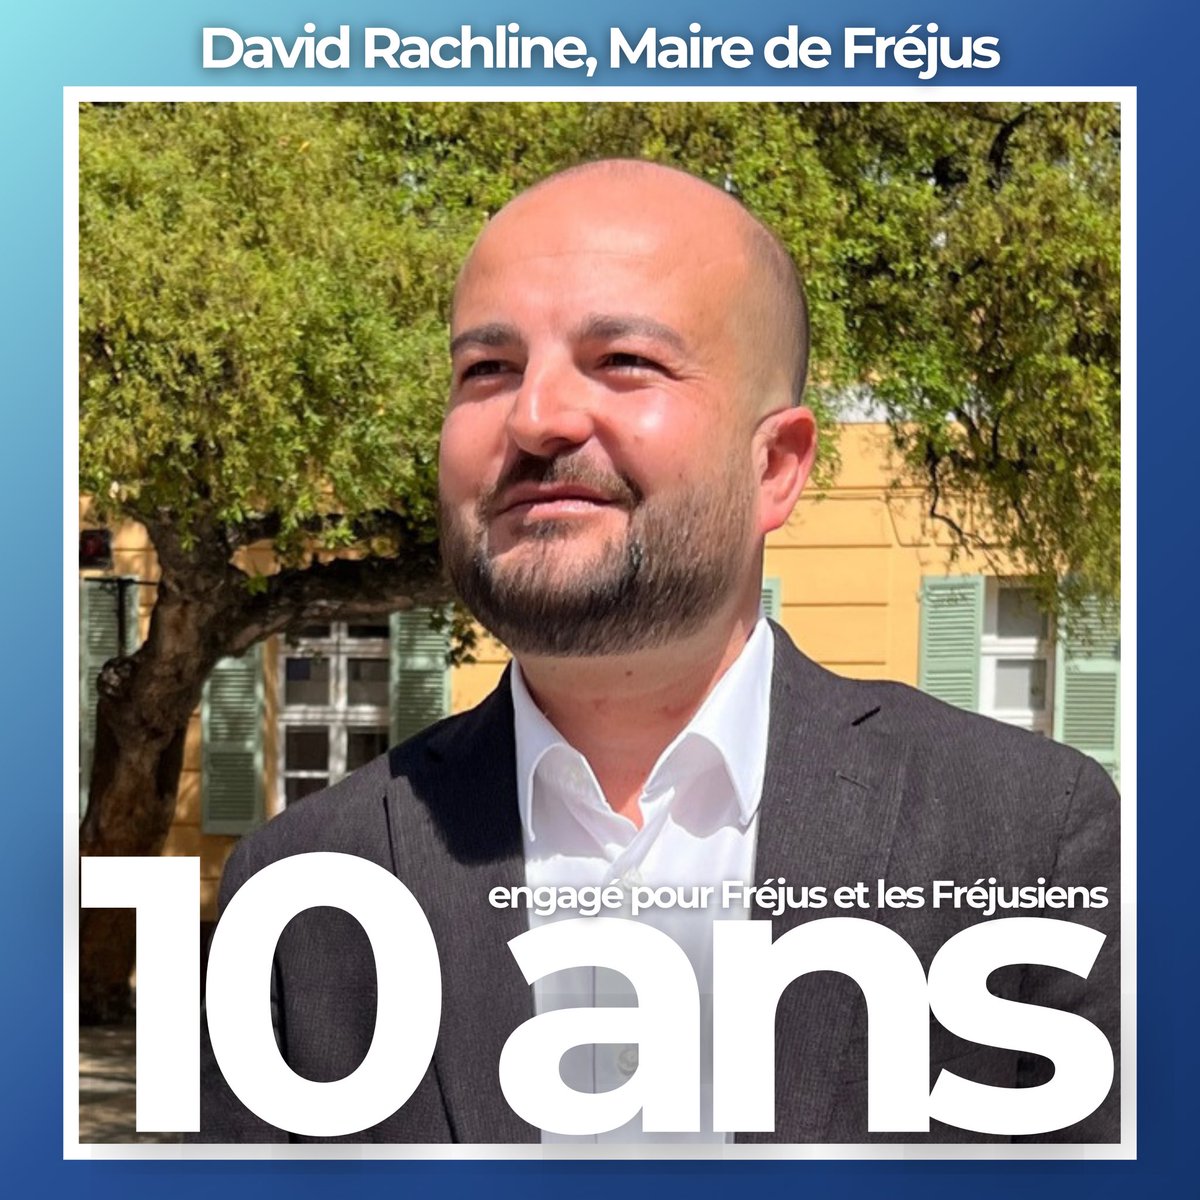 🎉 Merci à @david_rachline, ainsi qu’à toute son équipe municipale, d’œuvrer quotidiennement, et ce depuis 10 ans, pour notre belle cité romaine de #Fréjus 🙏🏻🇫🇷